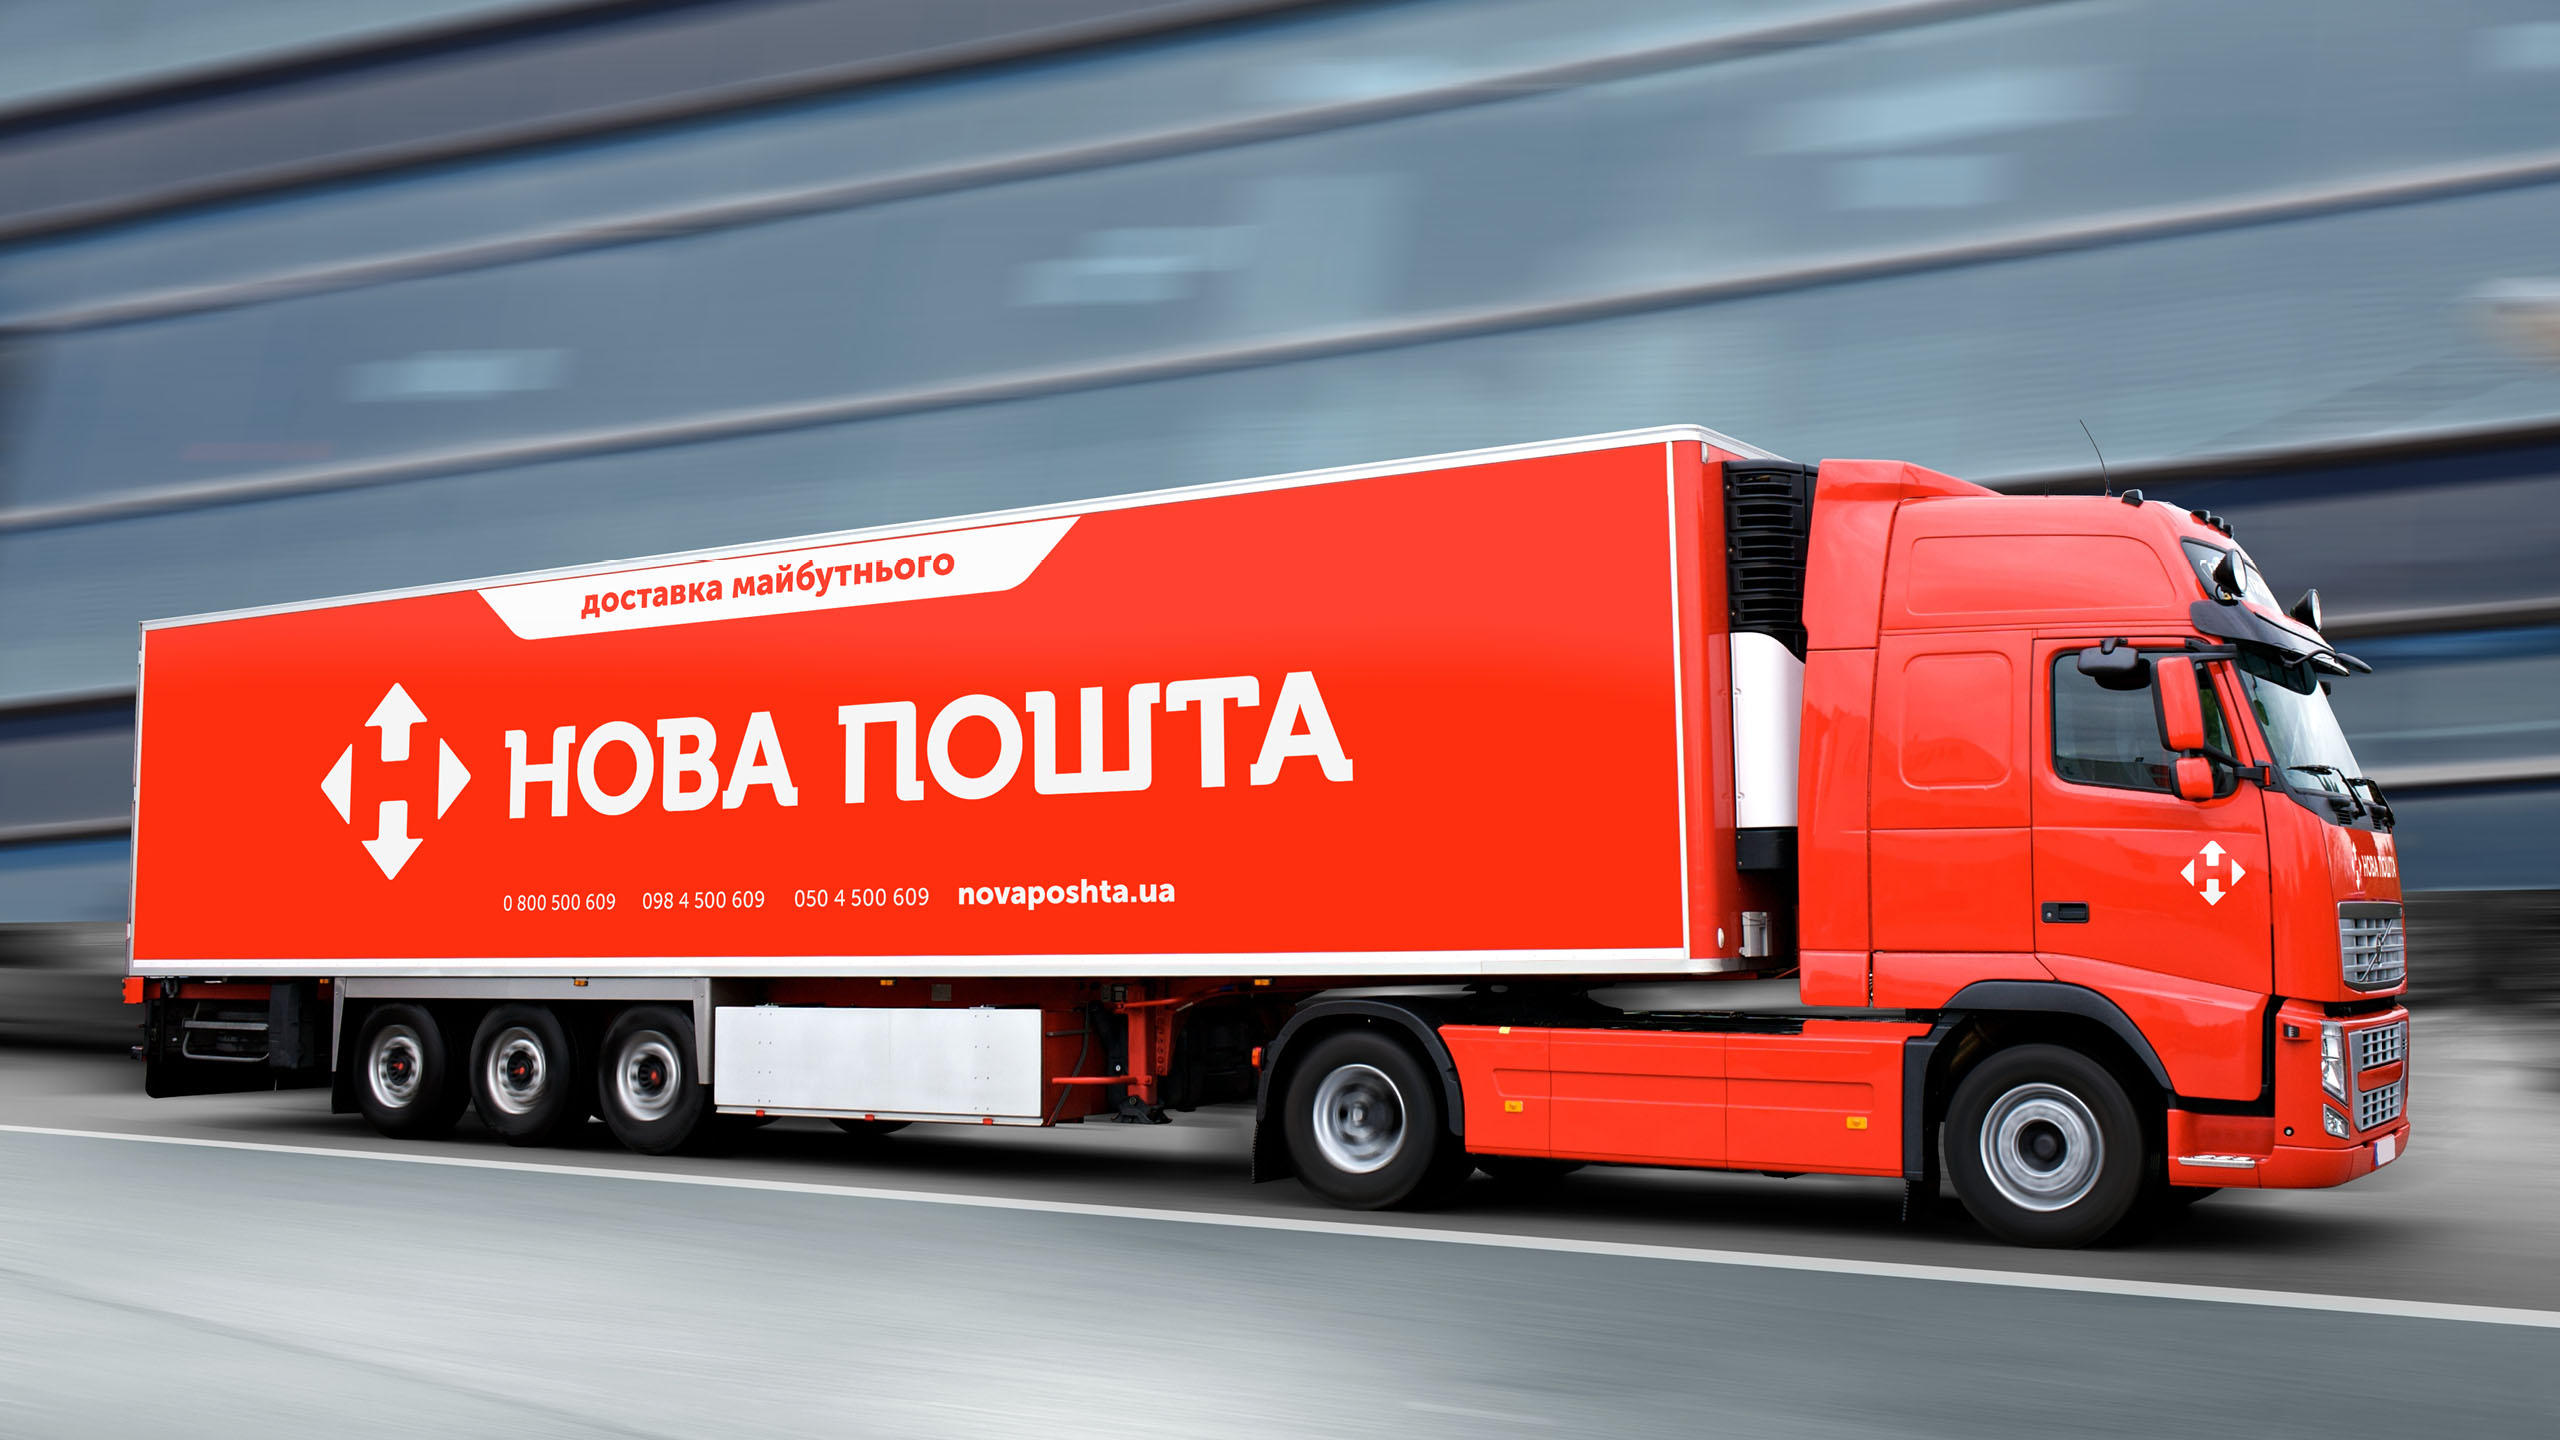 Нова пошта» запустила услугу доставки день в день - ITC.ua